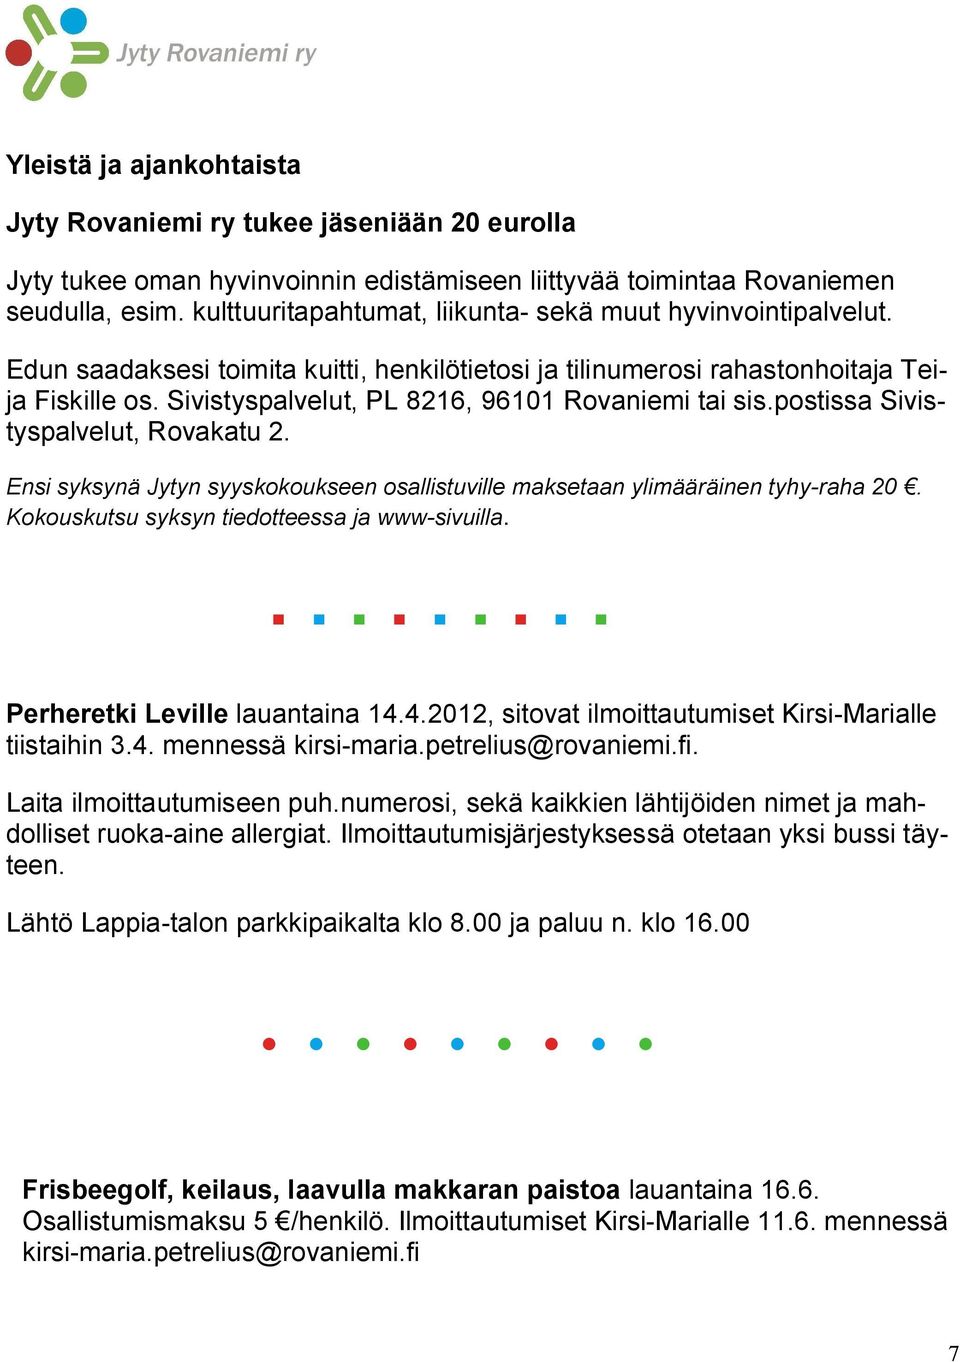 Sivistyspalvelut, PL 8216, 96101 Rovaniemi tai sis.postissa Sivistyspalvelut, Rovakatu 2. Ensi syksynä Jytyn syyskokoukseen osallistuville maksetaan ylimääräinen tyhy raha 20.